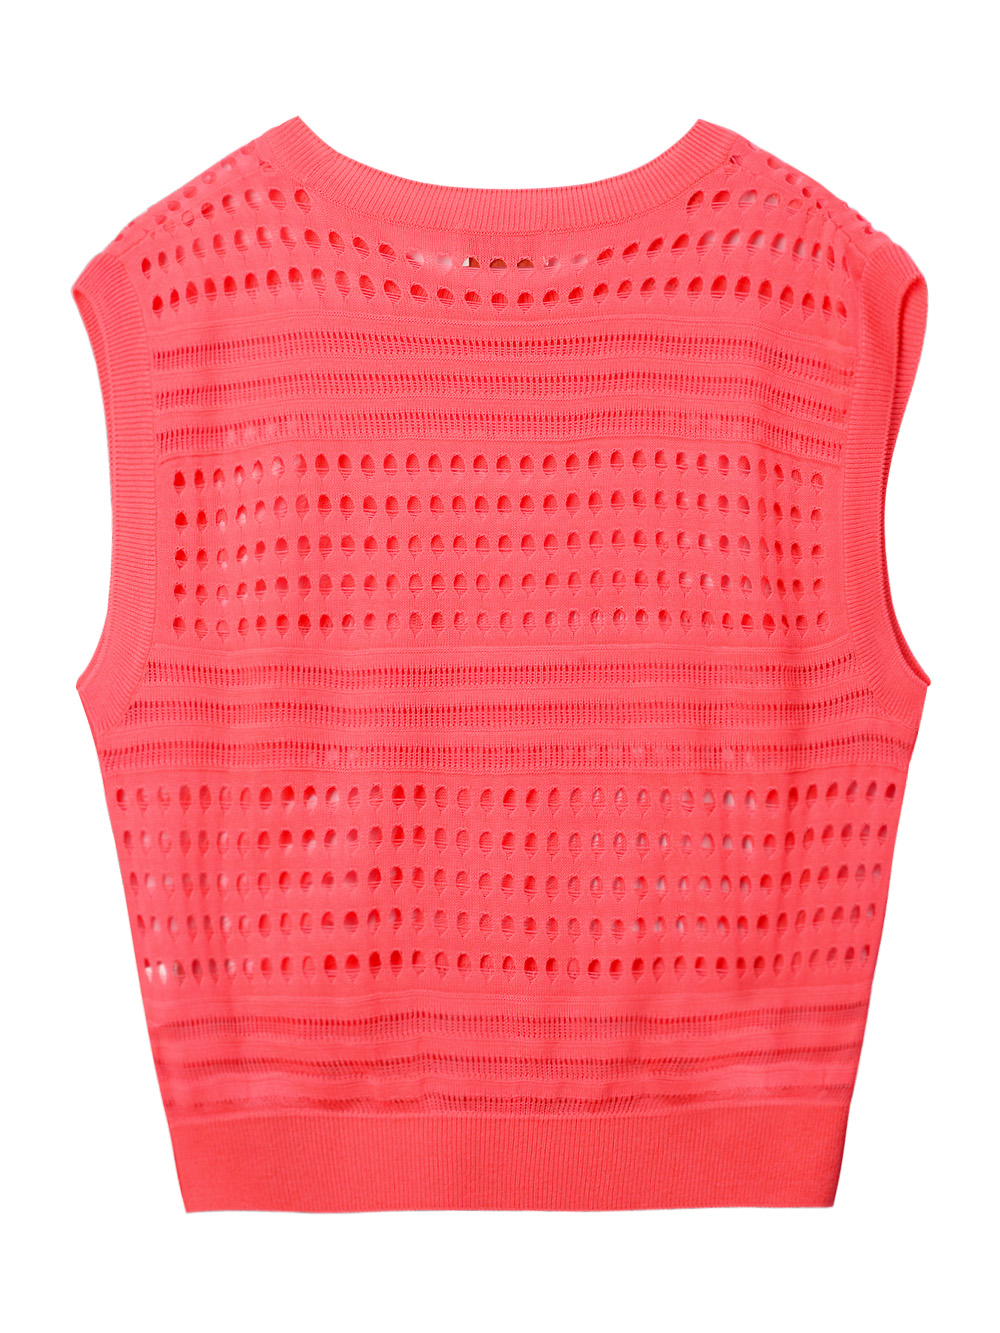 UTAA Punching Scasi Knit Vest : Women’s Pink – UTAA GOLF USA – Welcome